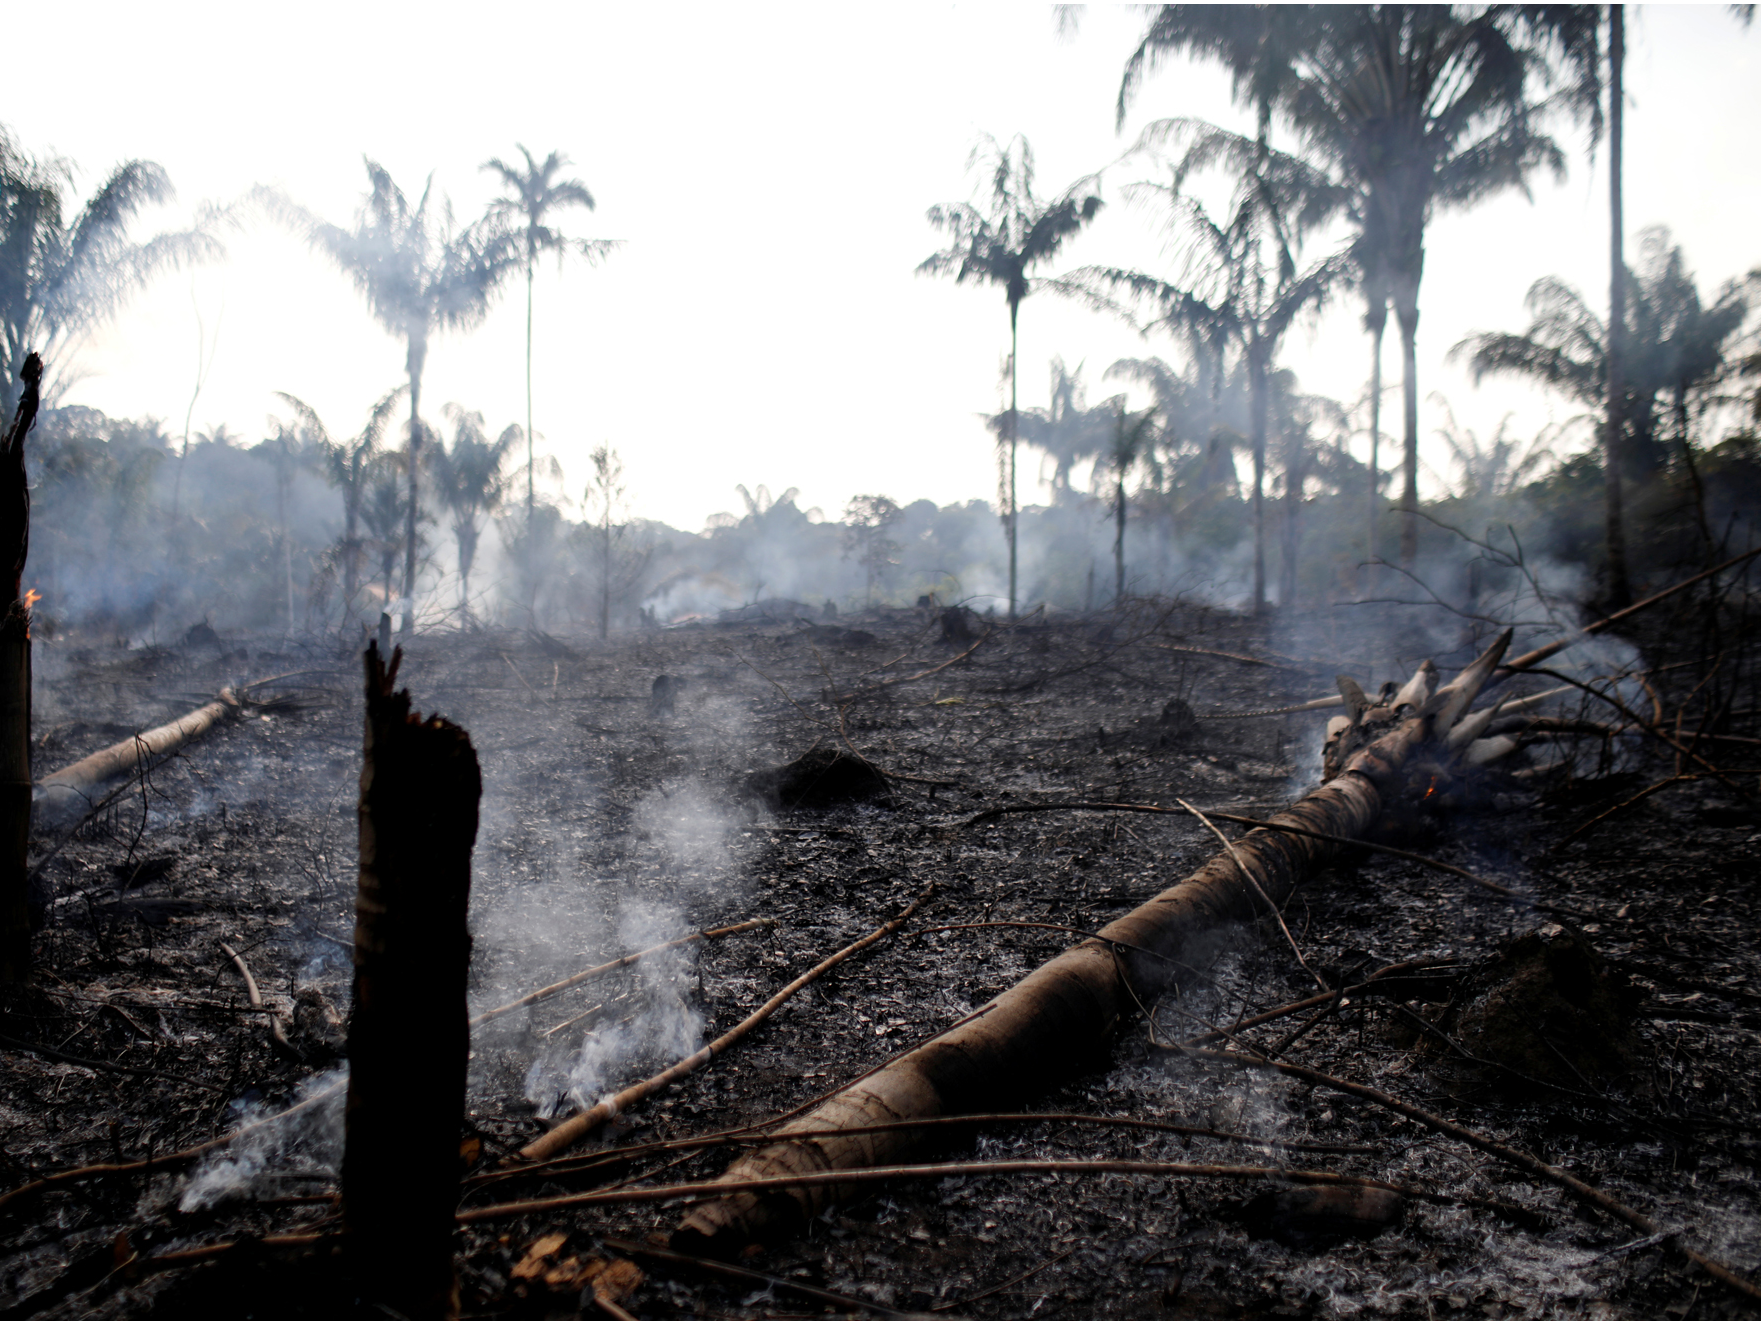 アマゾンの熱帯雨林が記録的な速さで燃えている。2018年には約4万回の火災が発生したが、2019年はすでに7万4000回以上発生している。